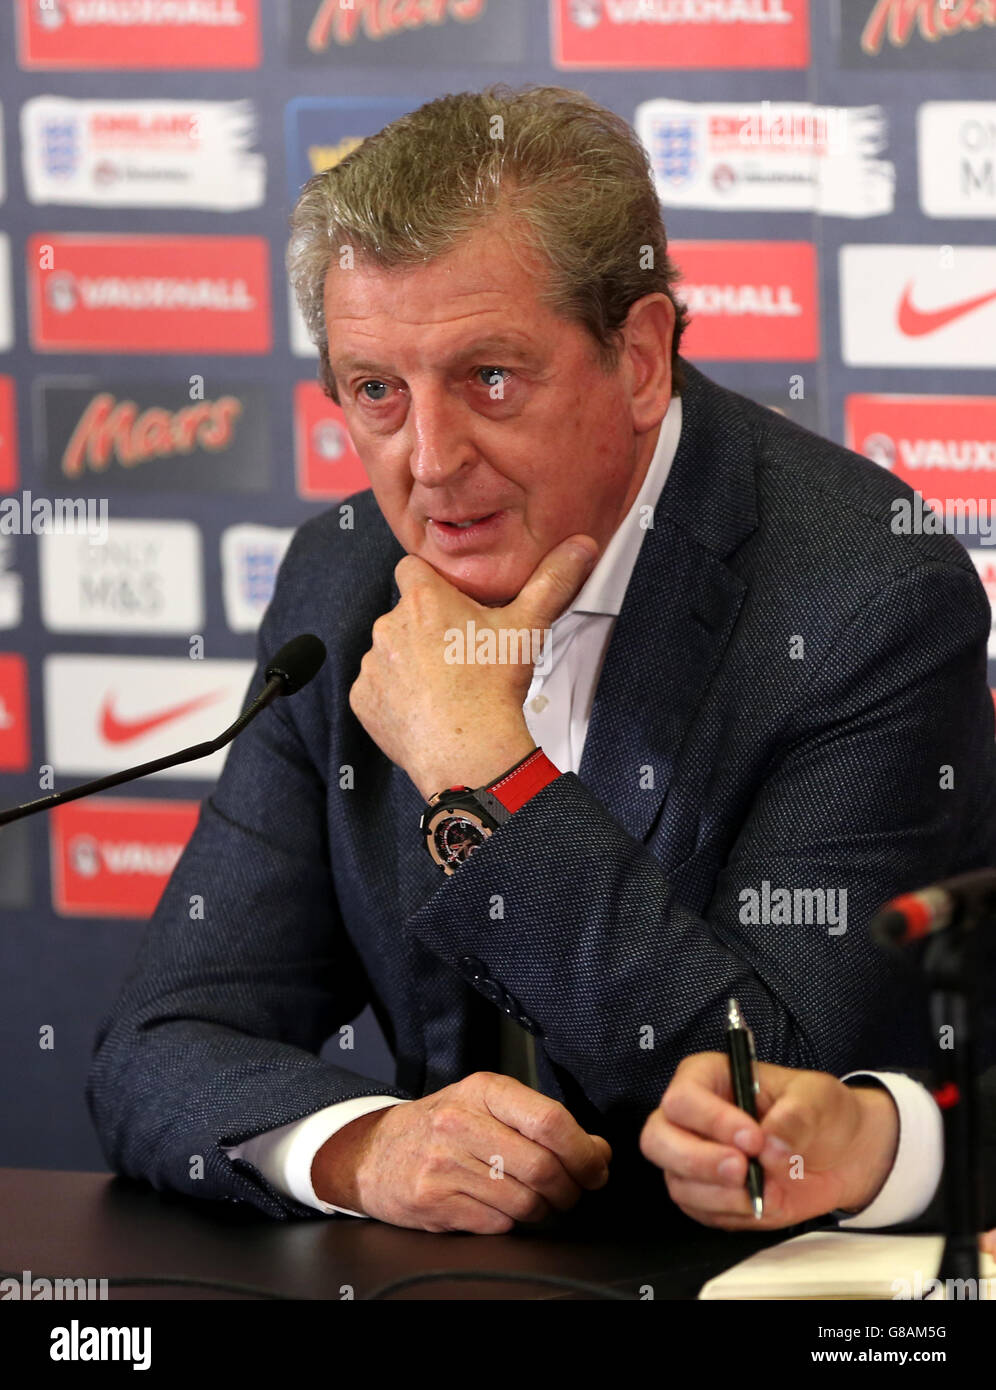 Calcio - Qualifiche UEFA Euro 2016 - Inghilterra / Estonia - Annuncio squadra Inghilterra - Stadio di Wembley. Il manager inglese Roy Hodgson durante l'annuncio della squadra al Wembley Stadium di Londra. Foto Stock